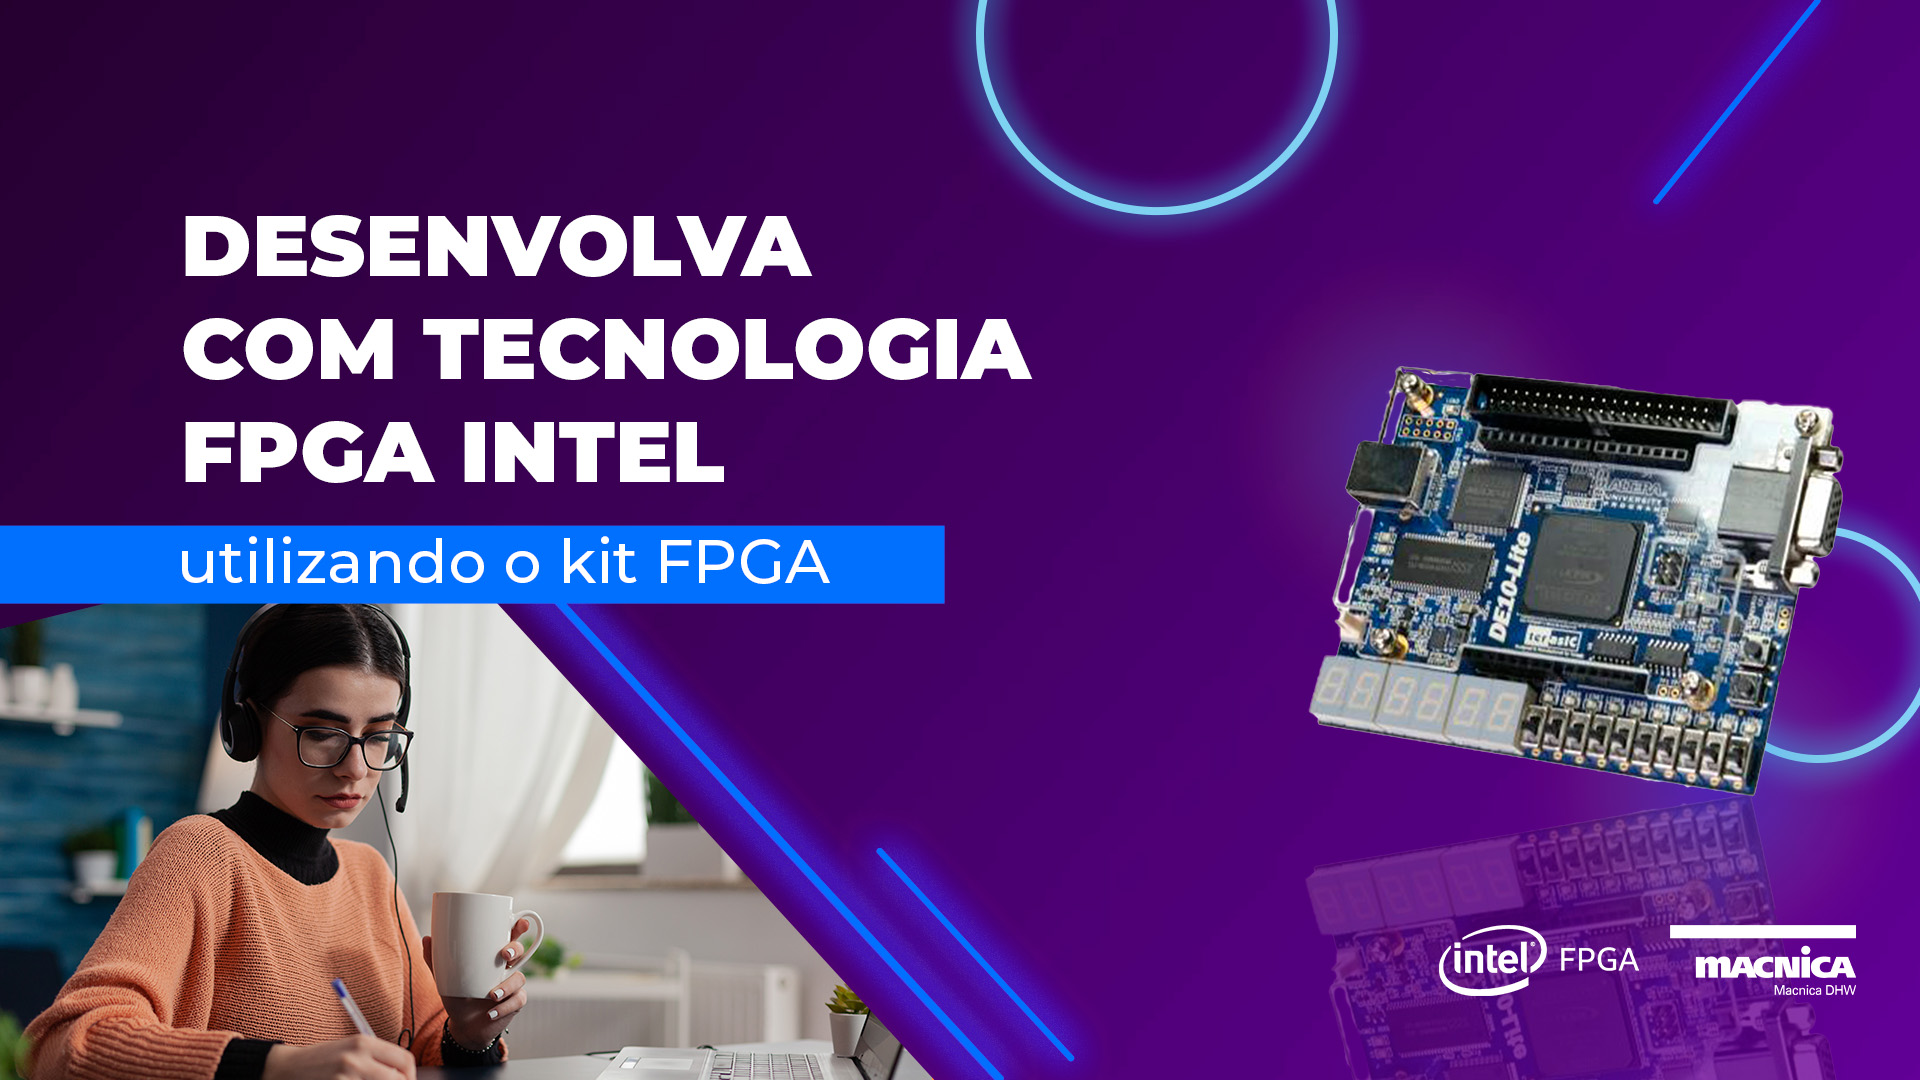 Desenvolva com tecnologia FPGA Intel, utilizando o kit FPGA